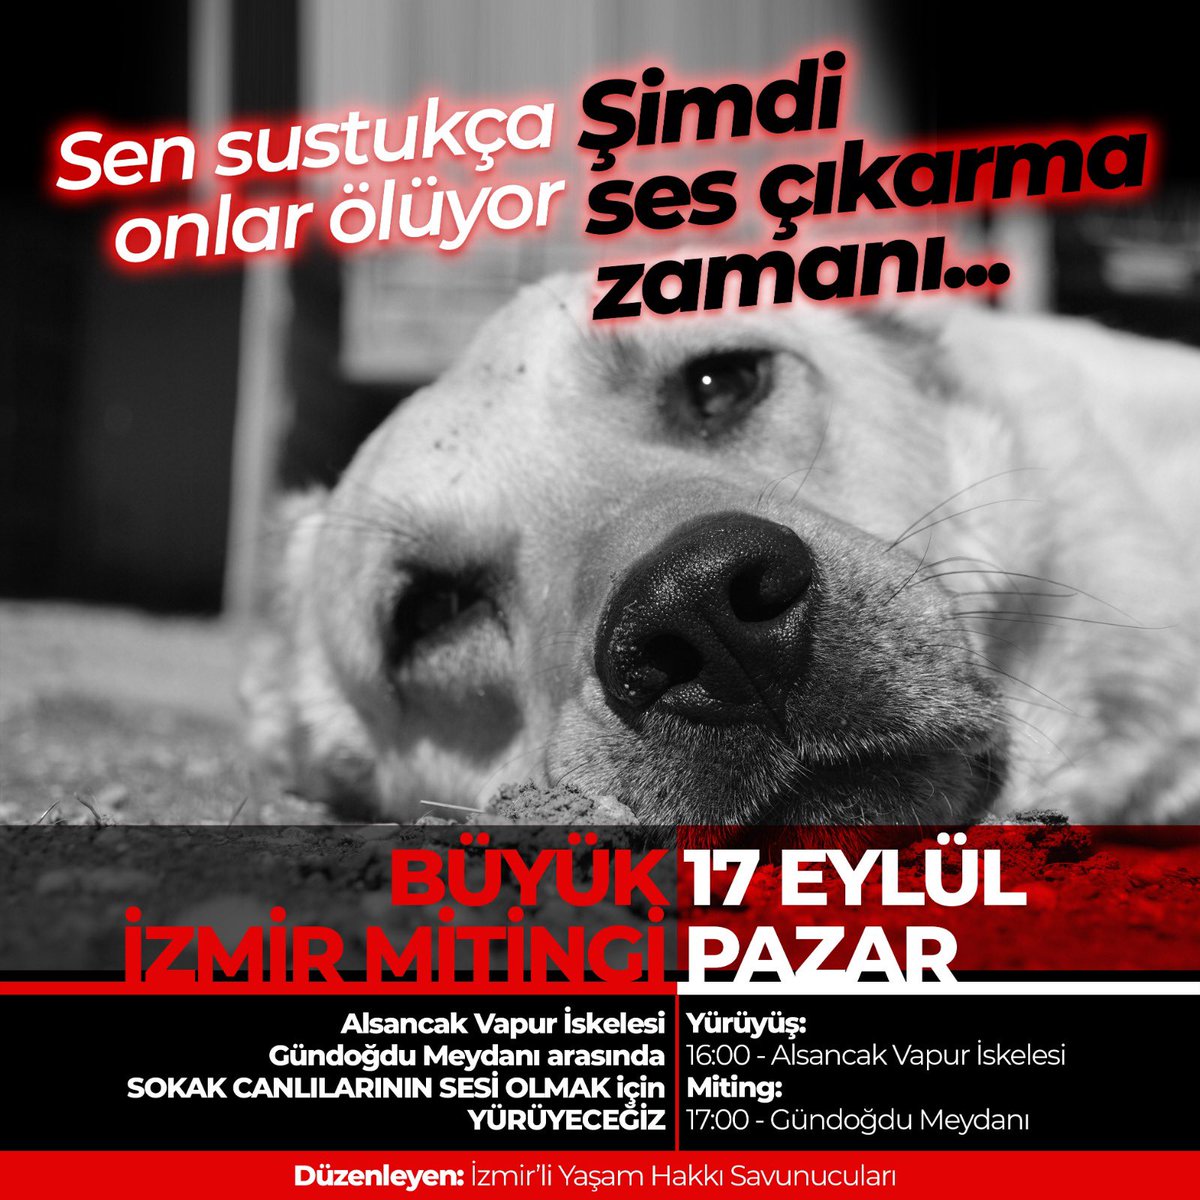 İzmir ordamı ‼️ sesim geliyor mu ses verin  vicdanlar! Bu masum canlar için paylaşmayan kalmasın.benim için onlar için  #senbenyokbizvariz